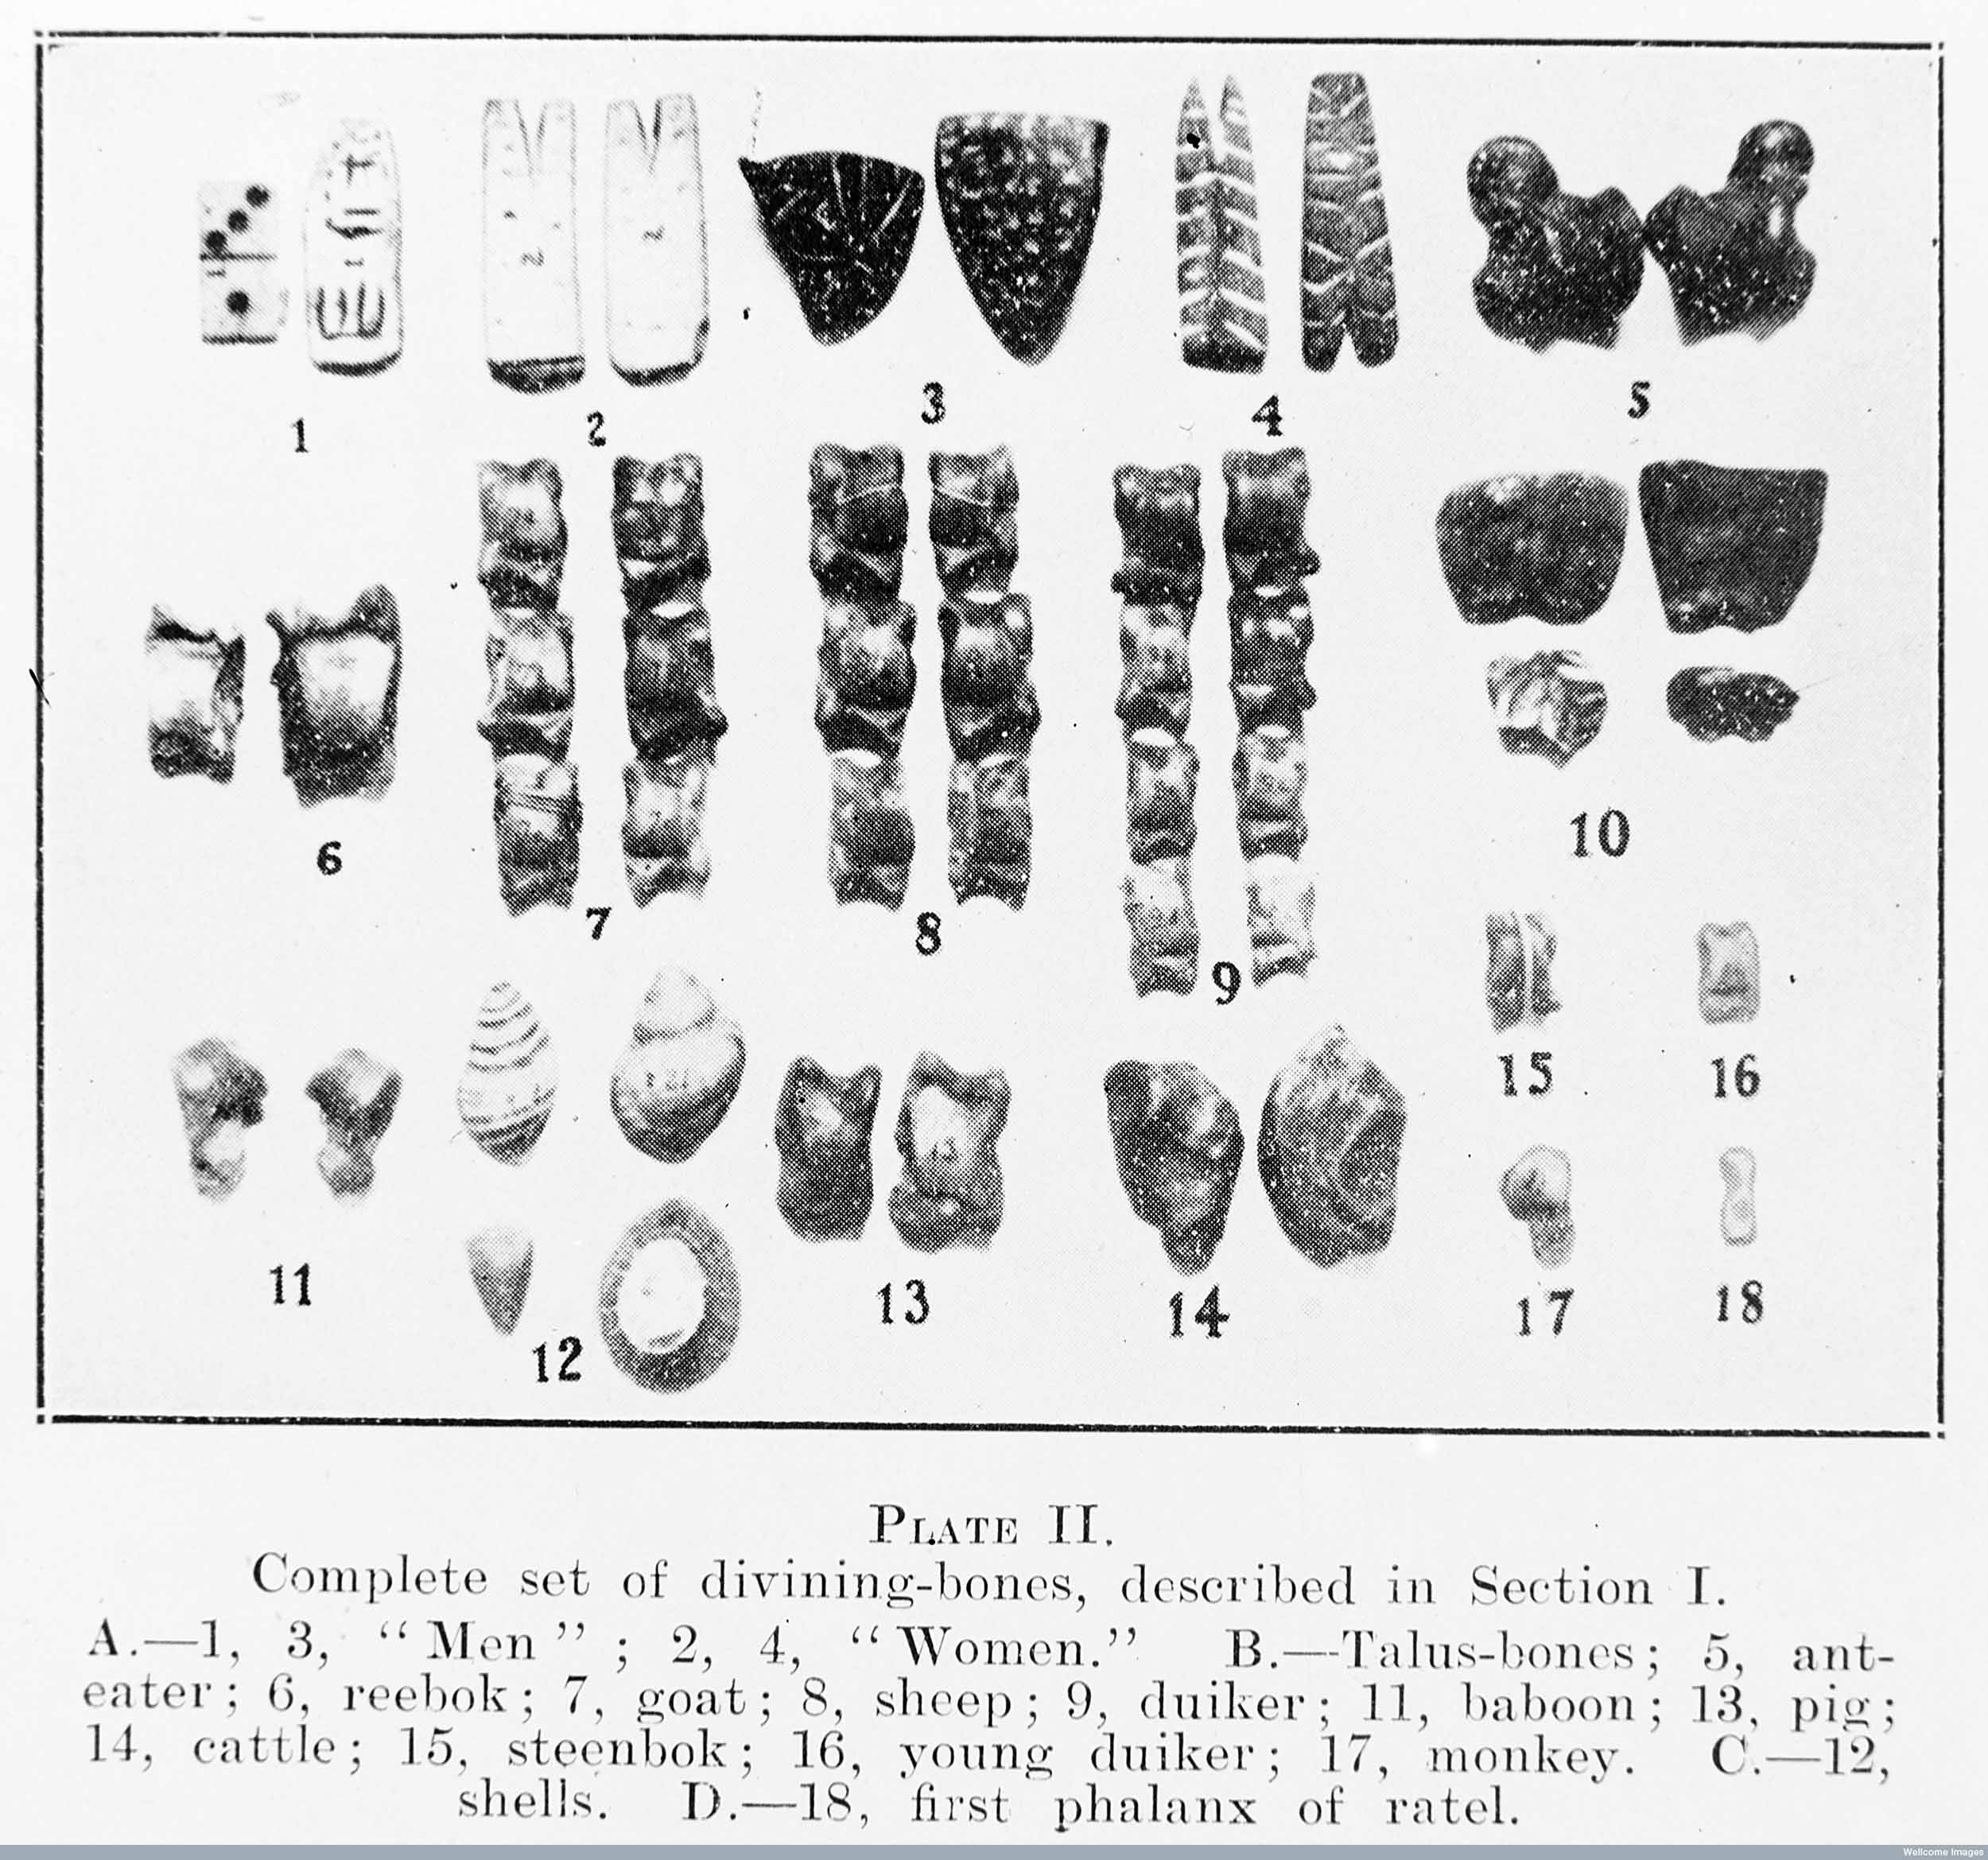 Illustração de um conjunto completo de ossos adivinhos dos Estudos Bantu, de K.M. Watt e N.J.V. Warmelo. Copyright Wellcome Library, Londres. Creative Commons Attribution 4.0 International ().